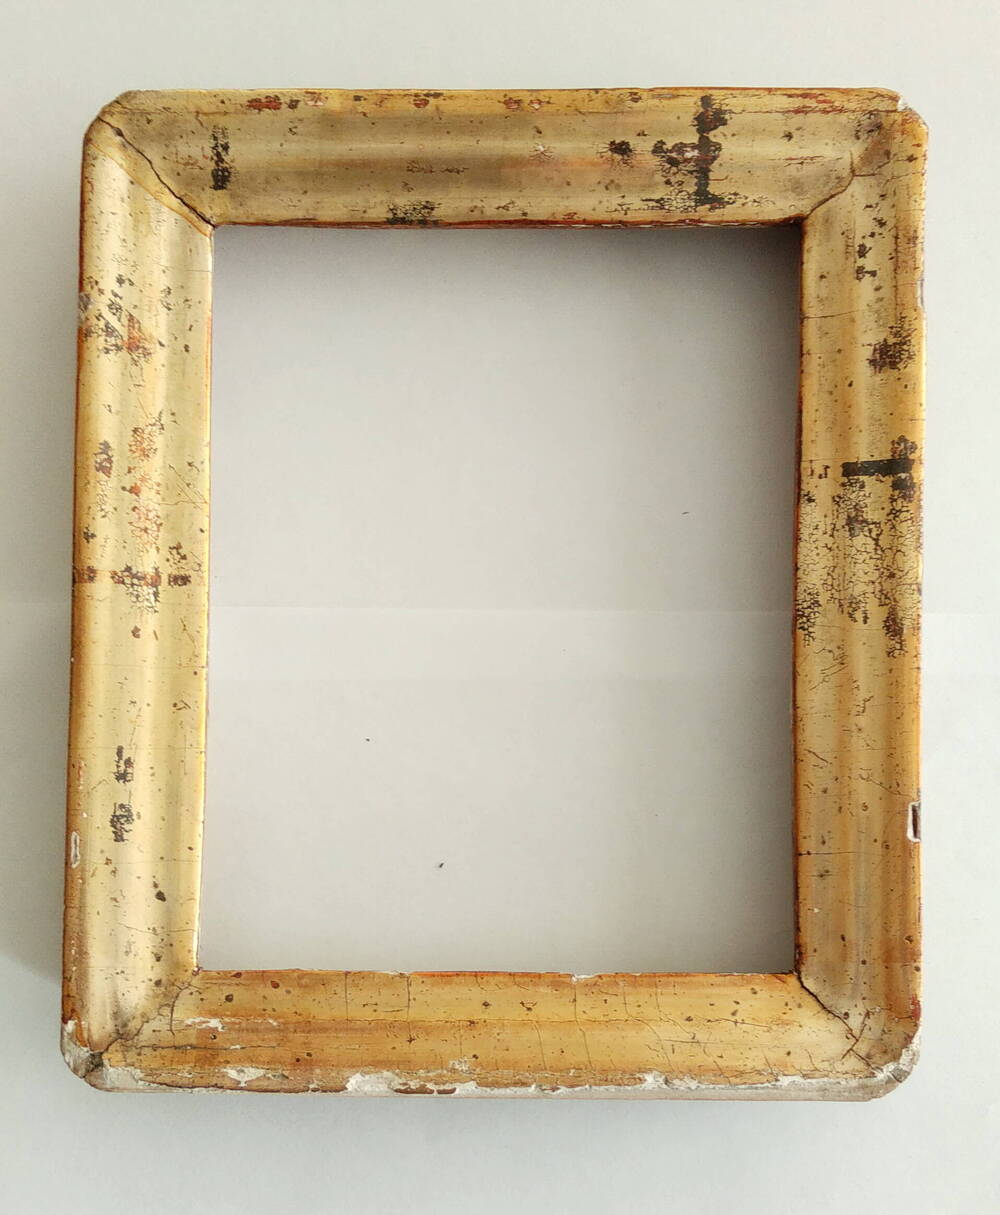 Киот деревянный, в виде рамки прямоугольной формы, позолоченный